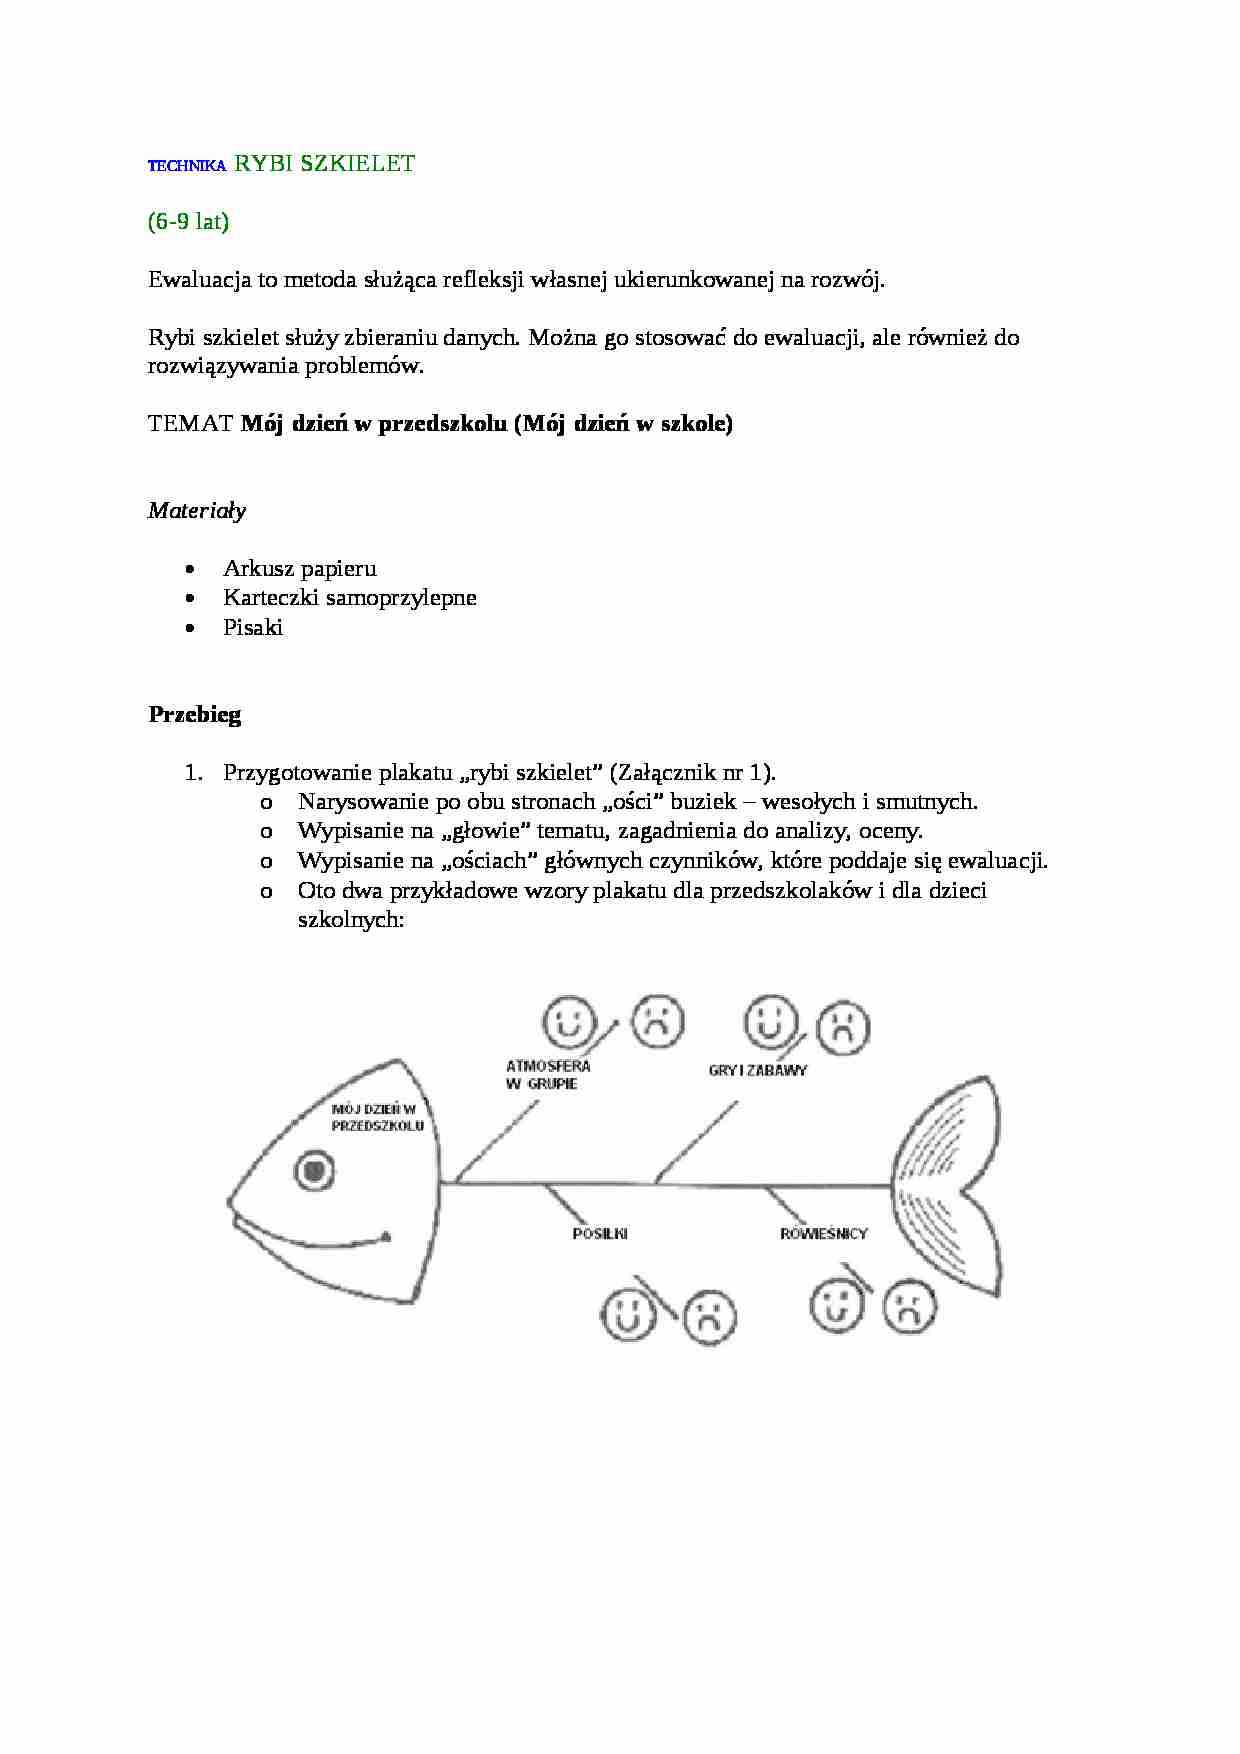 Nauczanie - technika rybi szkielet  - strona 1